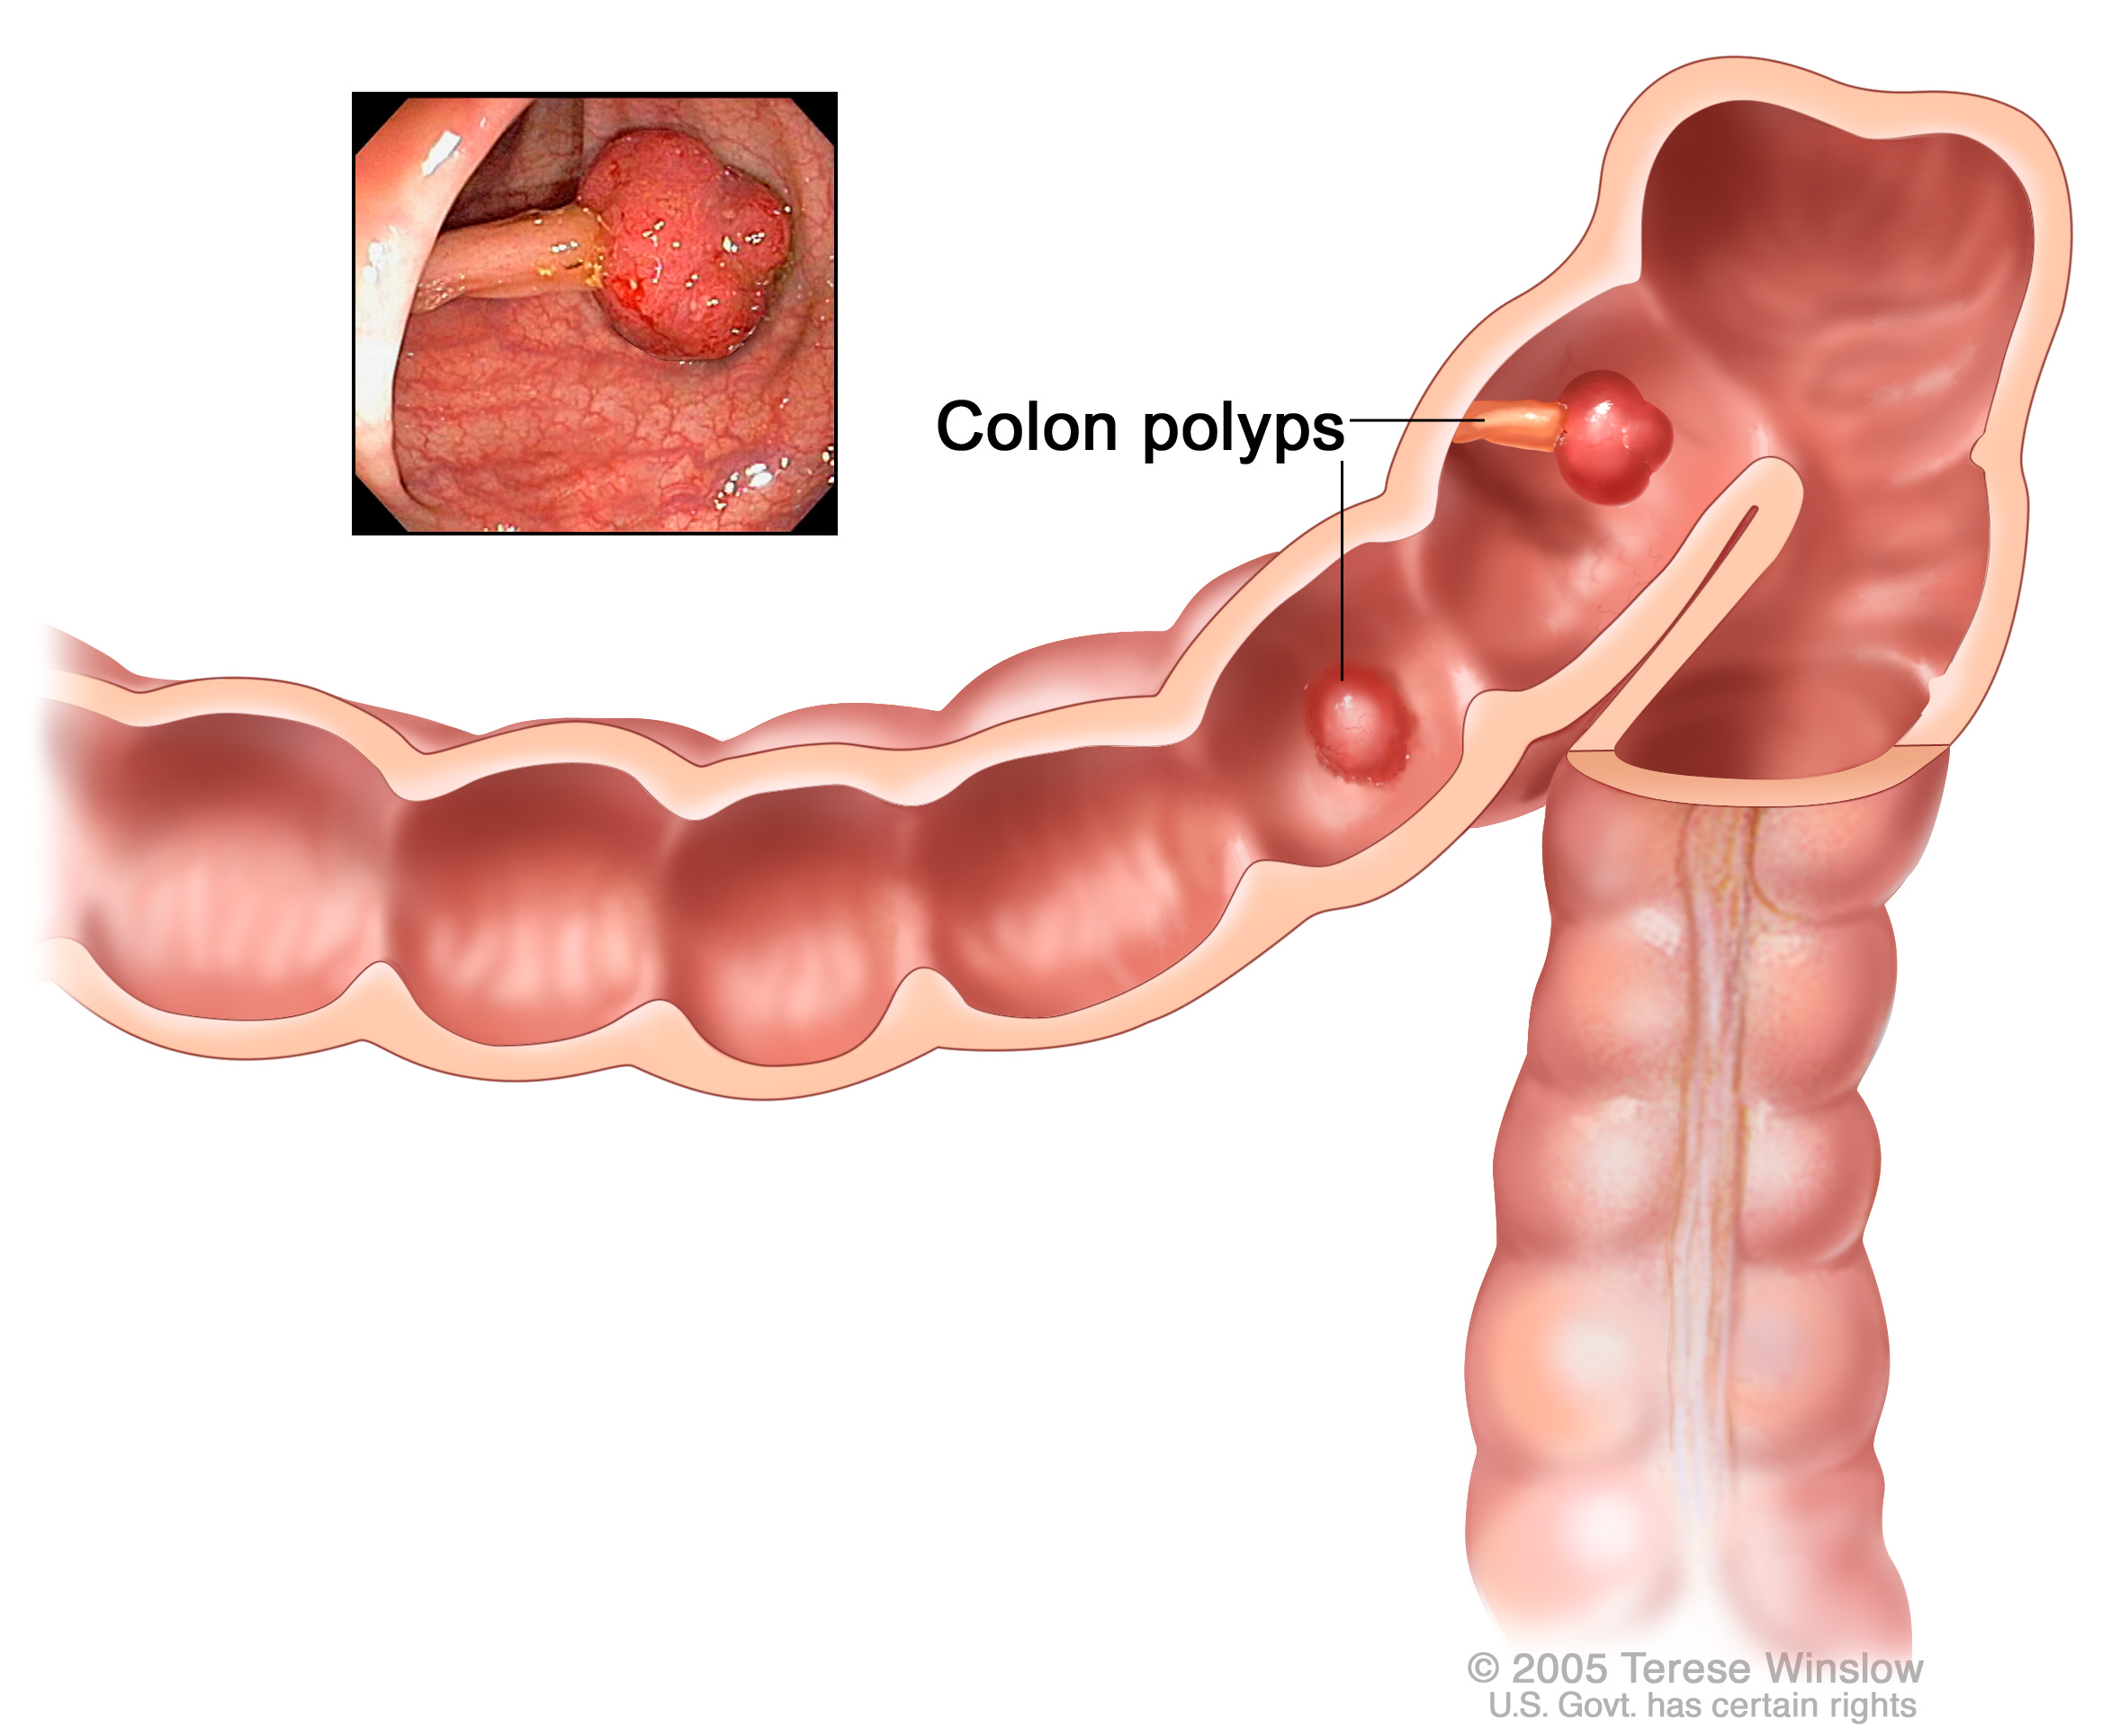 symptoms of colon polyps